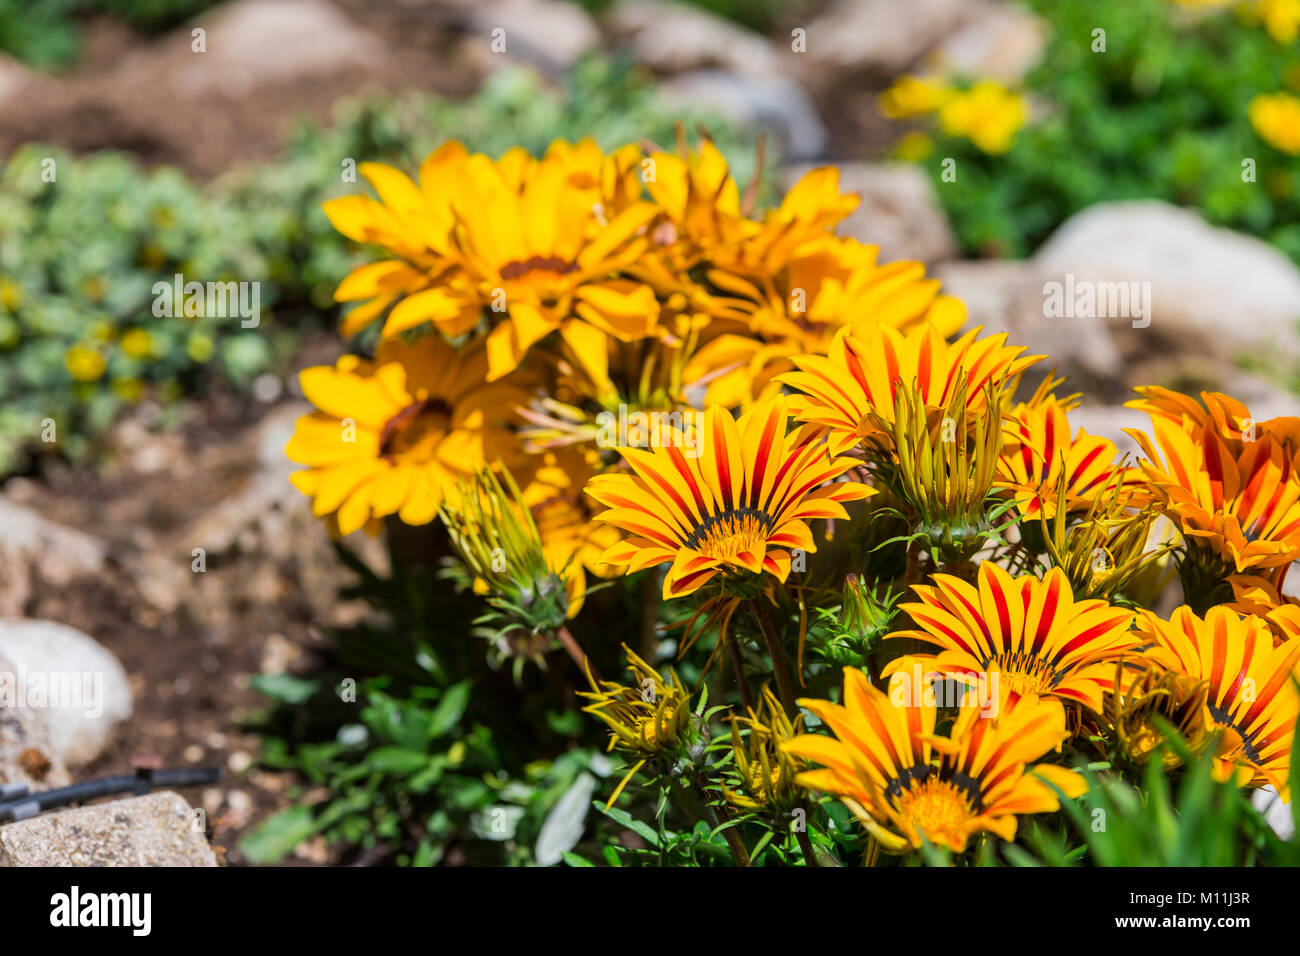 Beautiful colorful flowers. Rocca di Mezzo, province of L'Aquila, Abruzzo, Italy Stock Photo